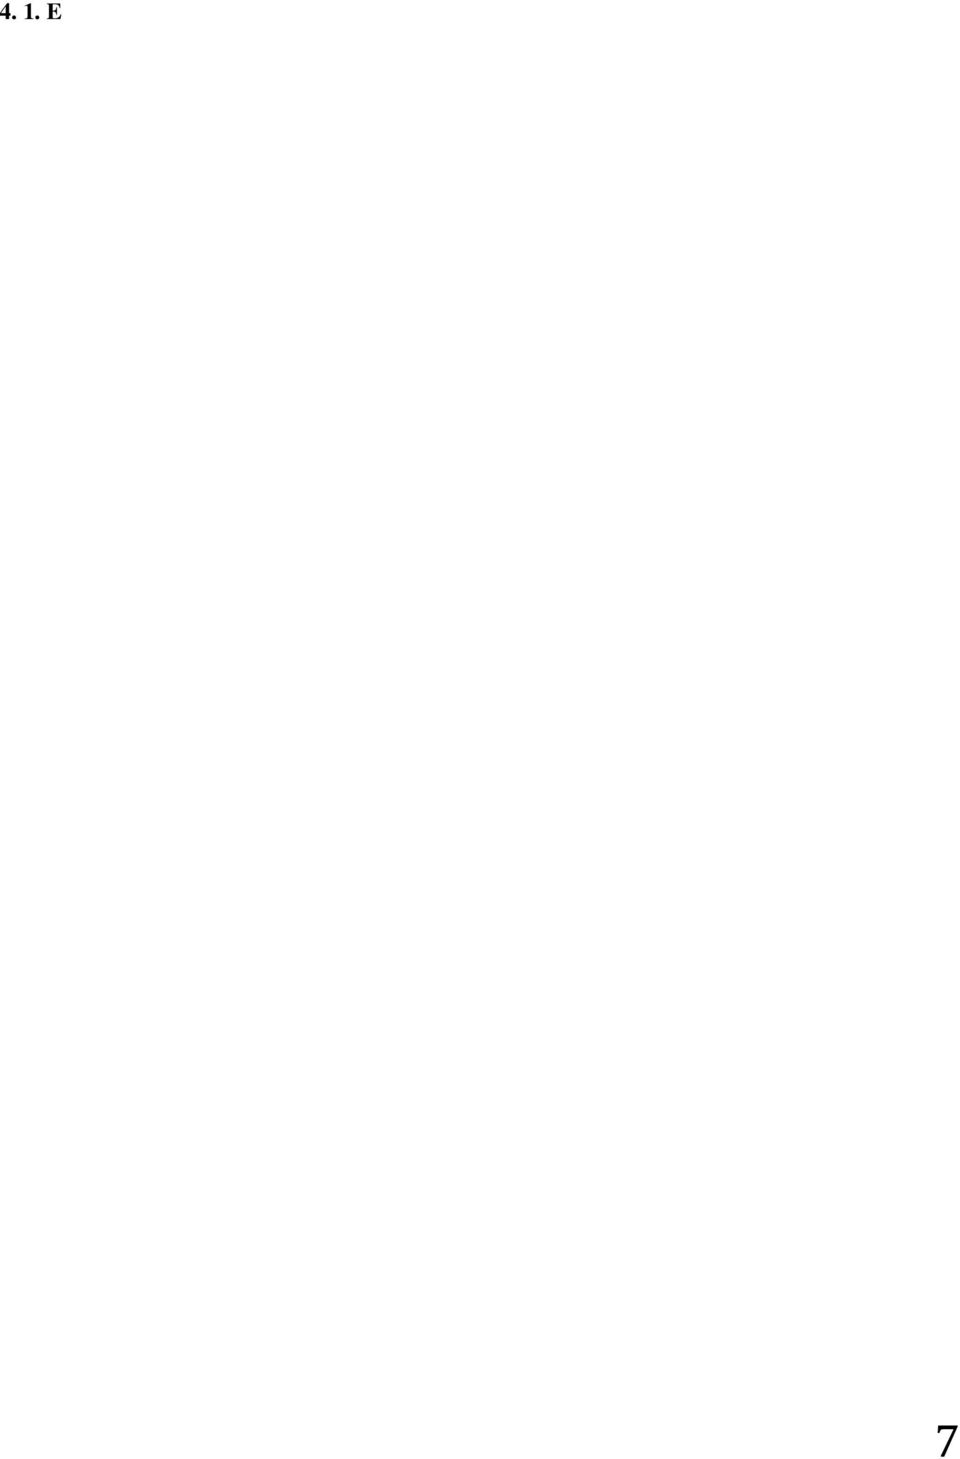 Yapılan İhaleler; 1-2009H030640 numaralı yatırım projesinde yer alan Bingöl Üniversitesi Akademik Ofis Ve İdari Bina Yapım İşi 16.12.2011(2011/179122) tarihinde edilerek, ihale Okçuoğlu İnş. Aş.